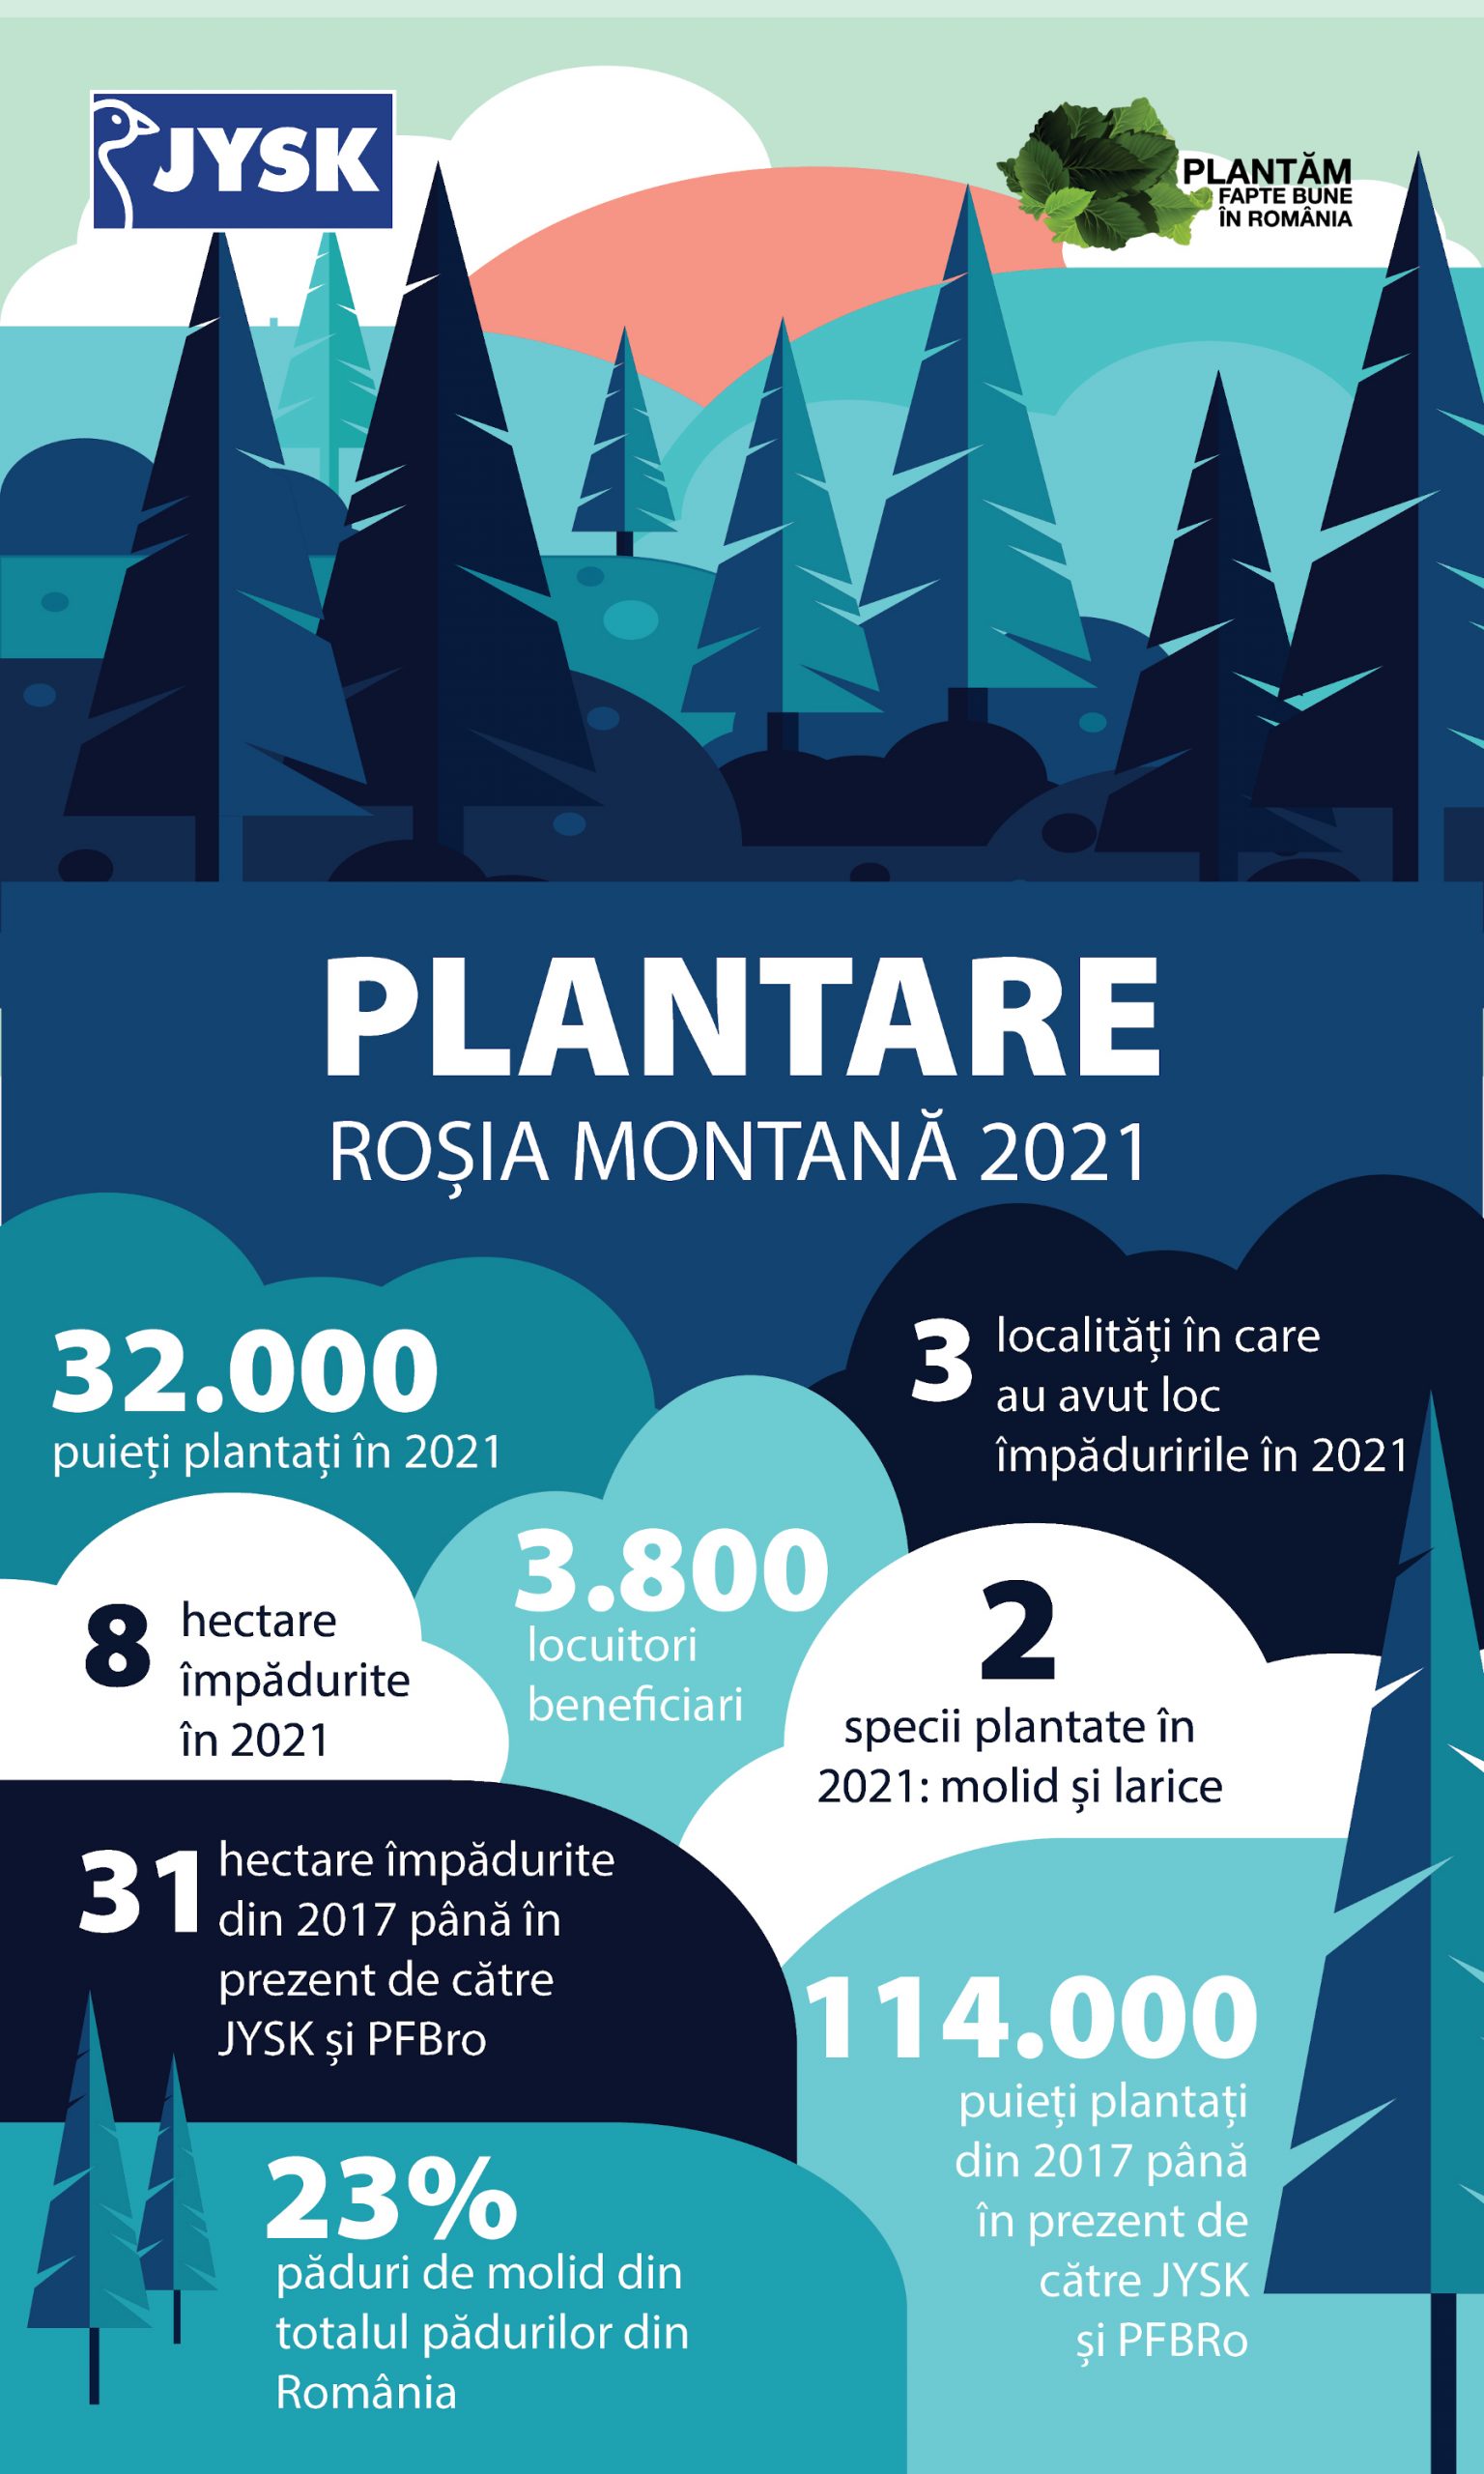 JYSK România și Plantăm fapte bune în România sărbătoresc 5 ani de colaborare prin plantarea a 32.000 de puieți în județul Alba